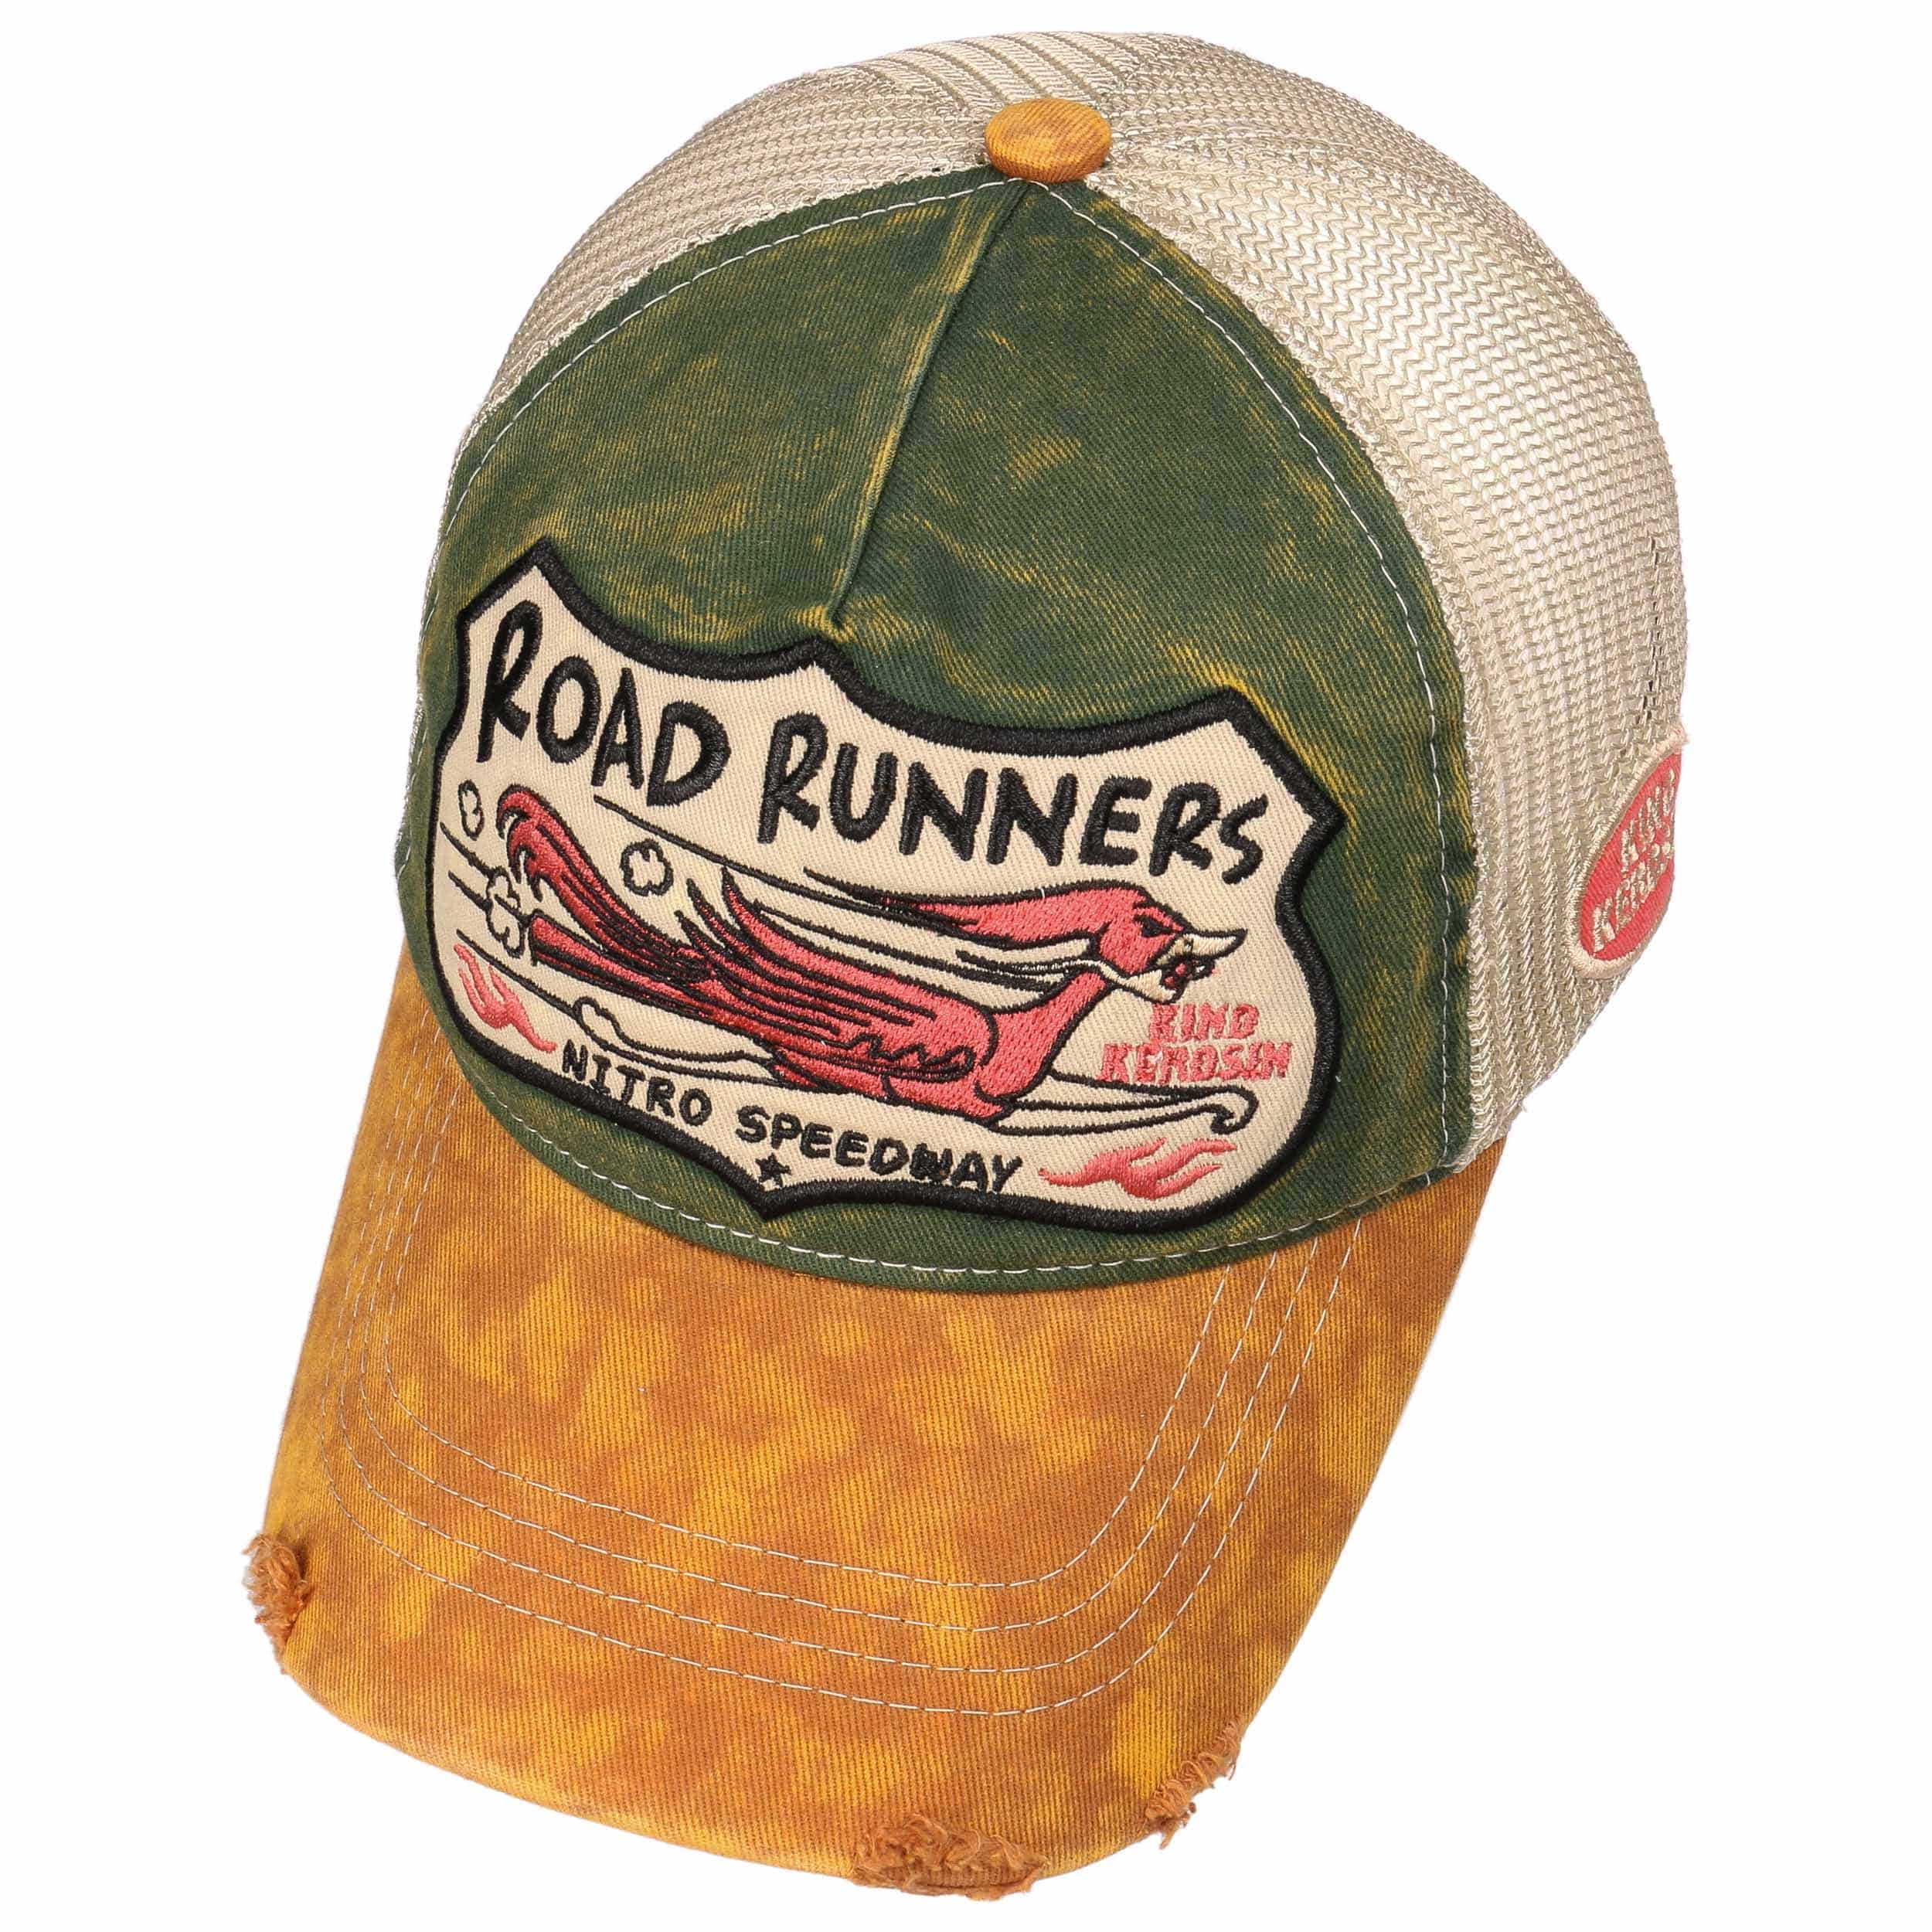 Road Runners Trucker Cap by King Kerosin - 37,95 €